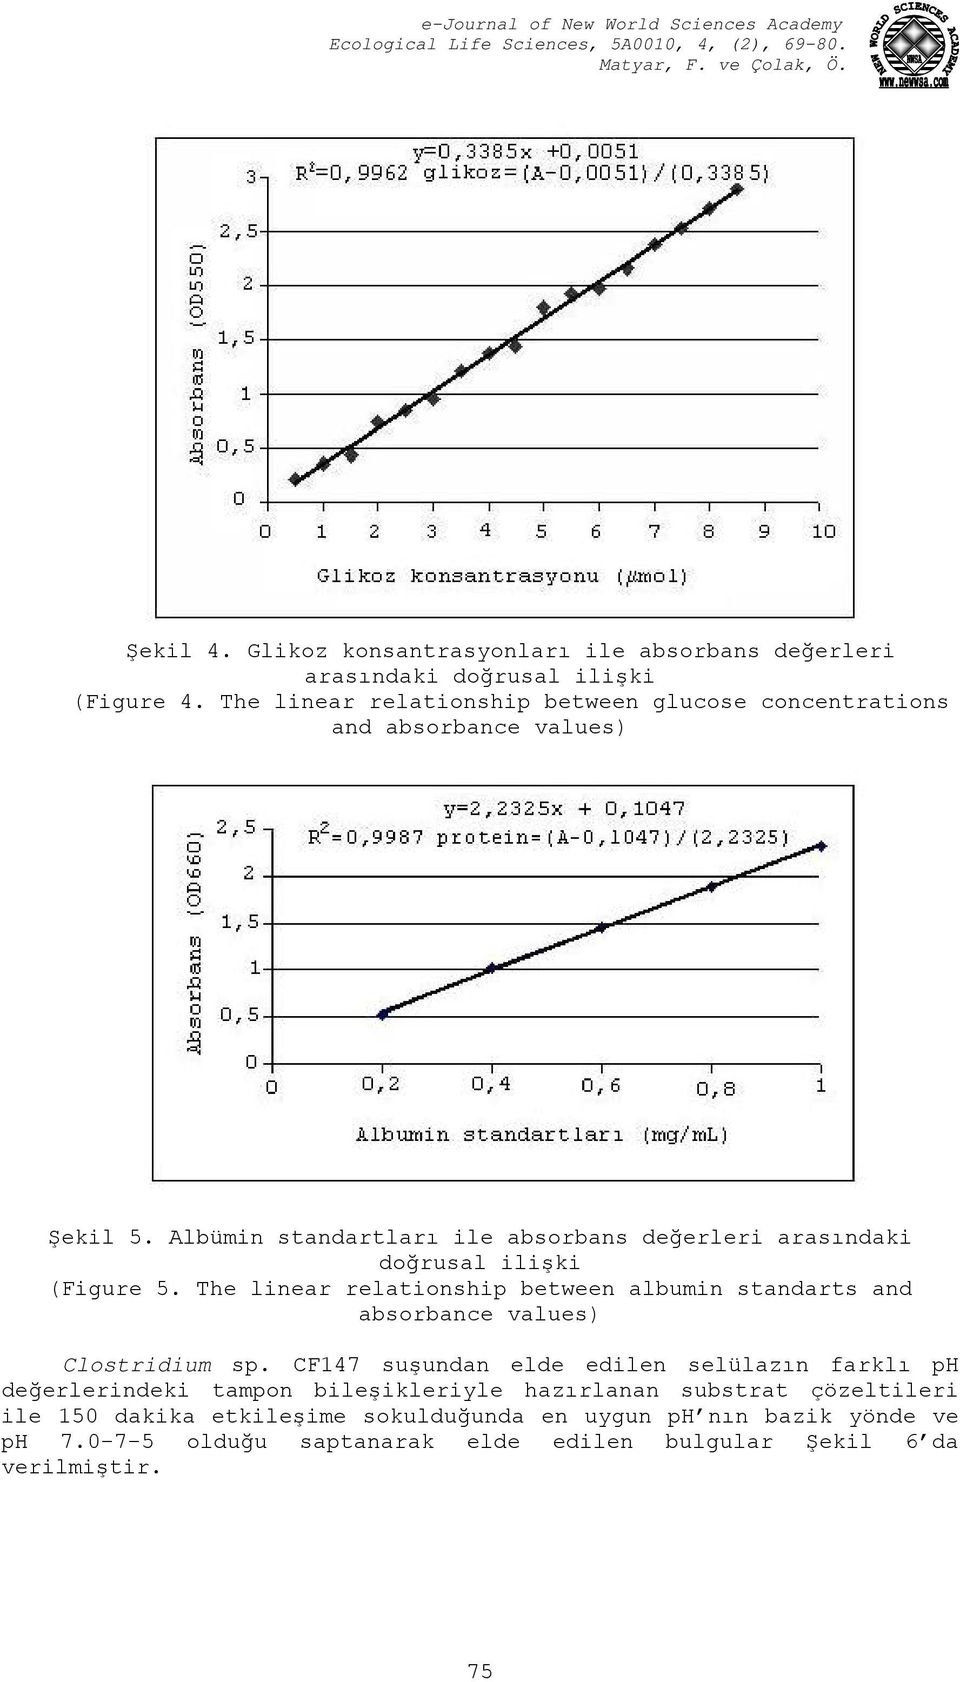 Albümin standartları ile absorbans değerleri arasındaki doğrusal ilişki (Figure 5.